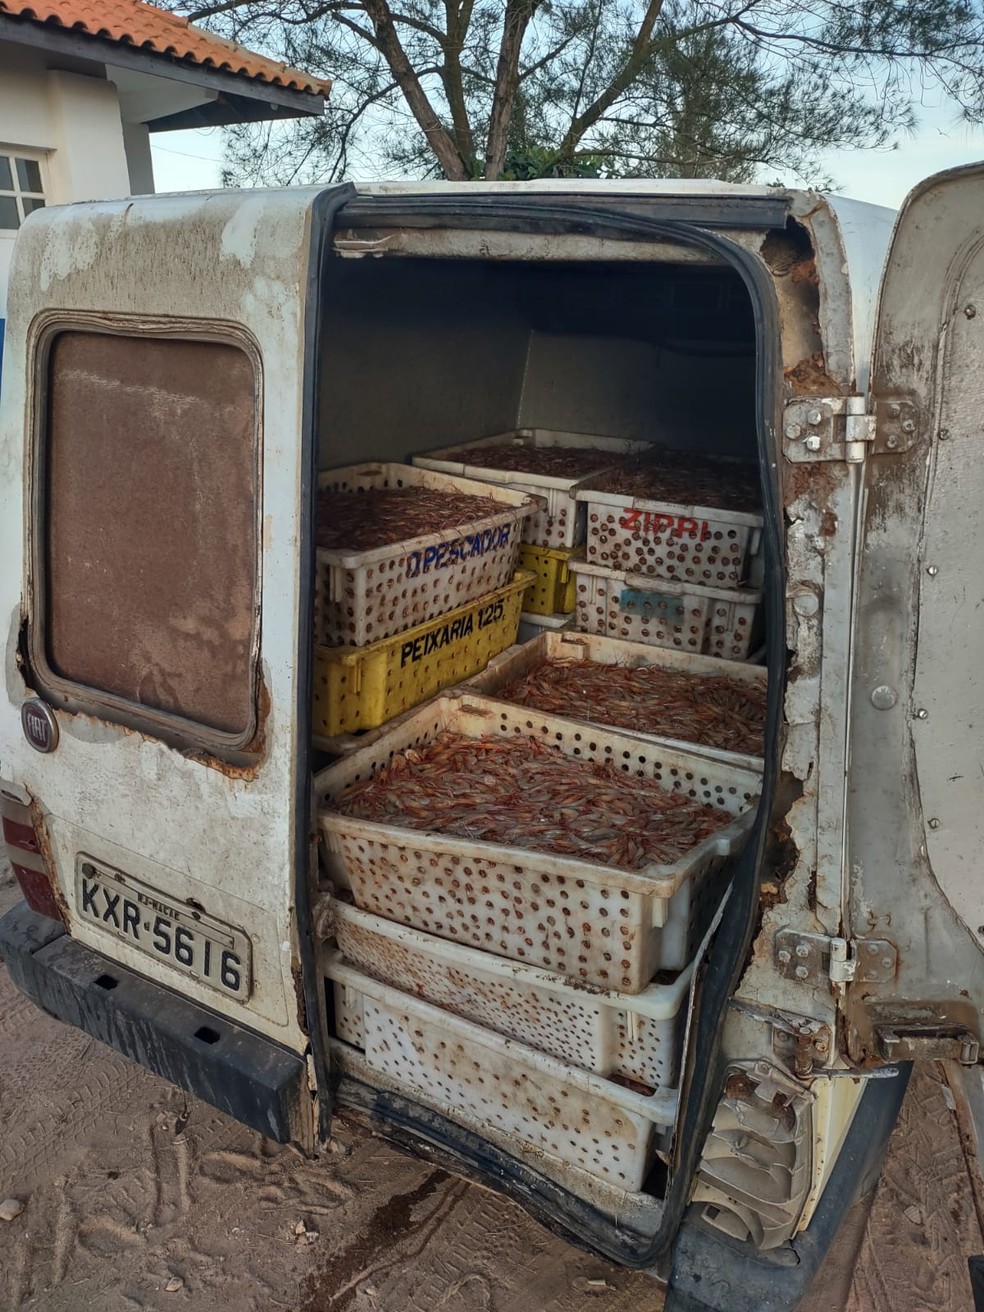 Cerca de 300kg de camarão foram apreendidos dentro de carro em Campos, no RJ — Foto: Divulgação